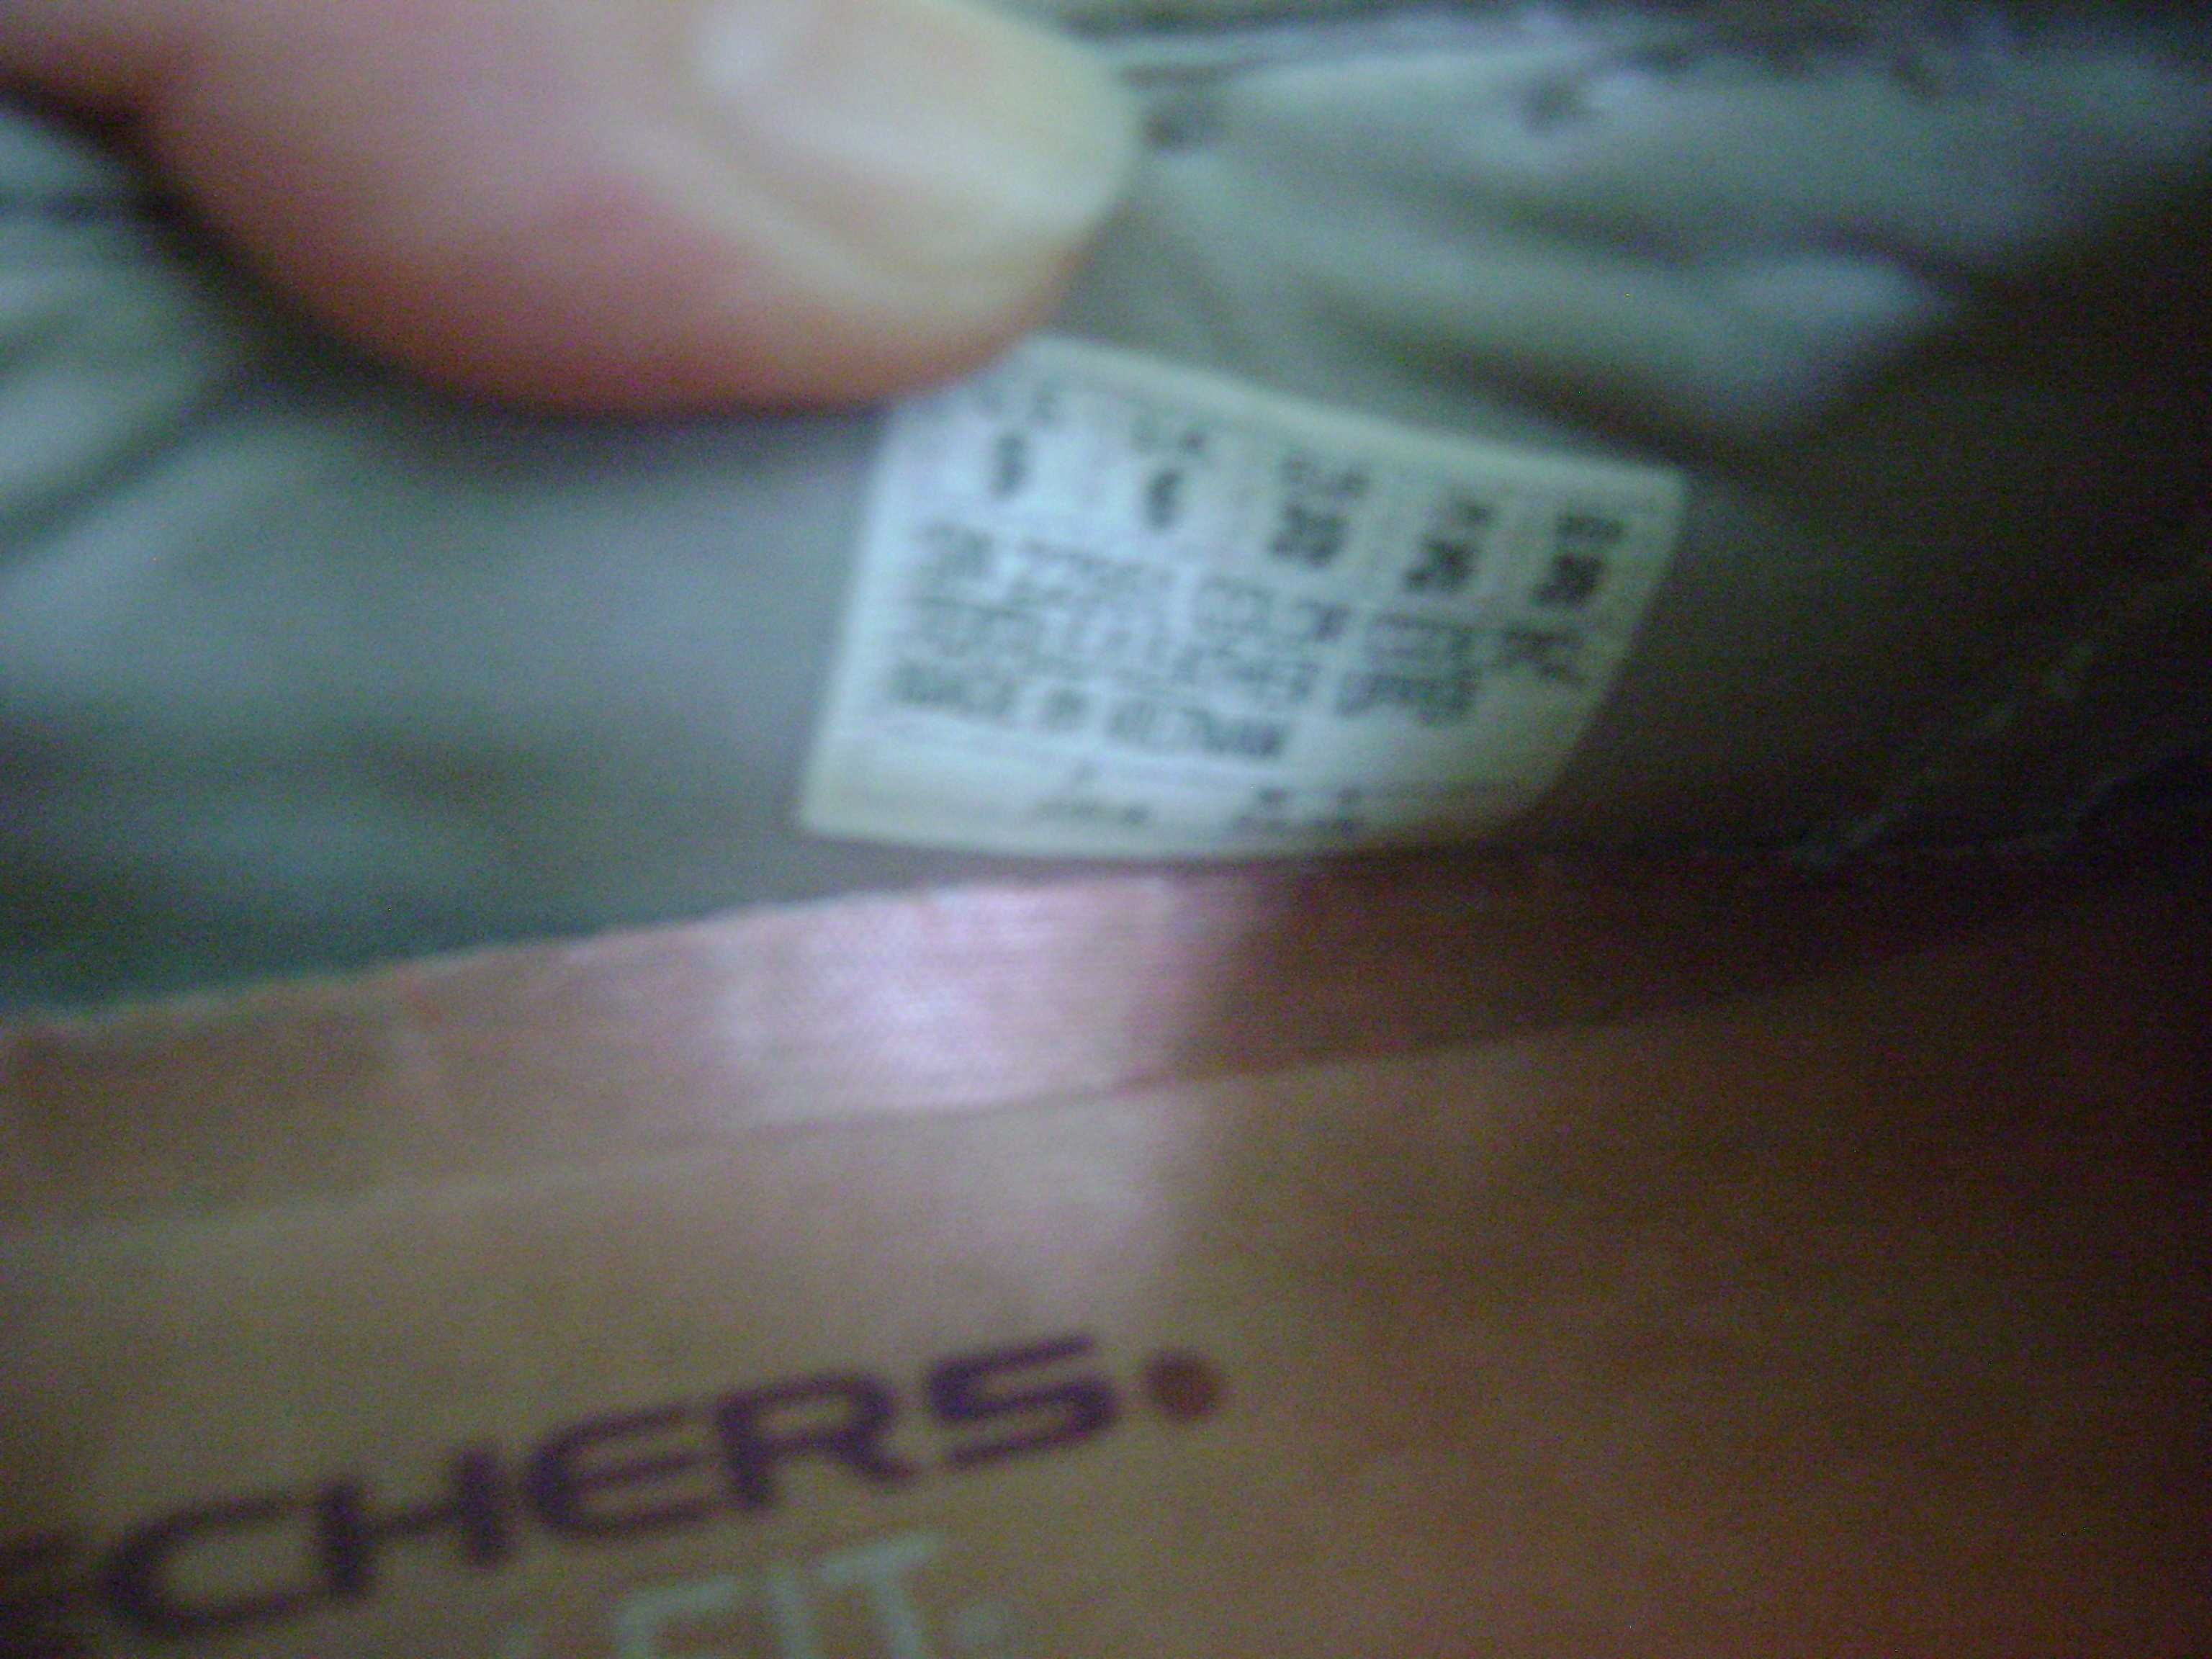 женские мокасины кроссовки Skechers (Вьетнам) р.39-40 25,5 см